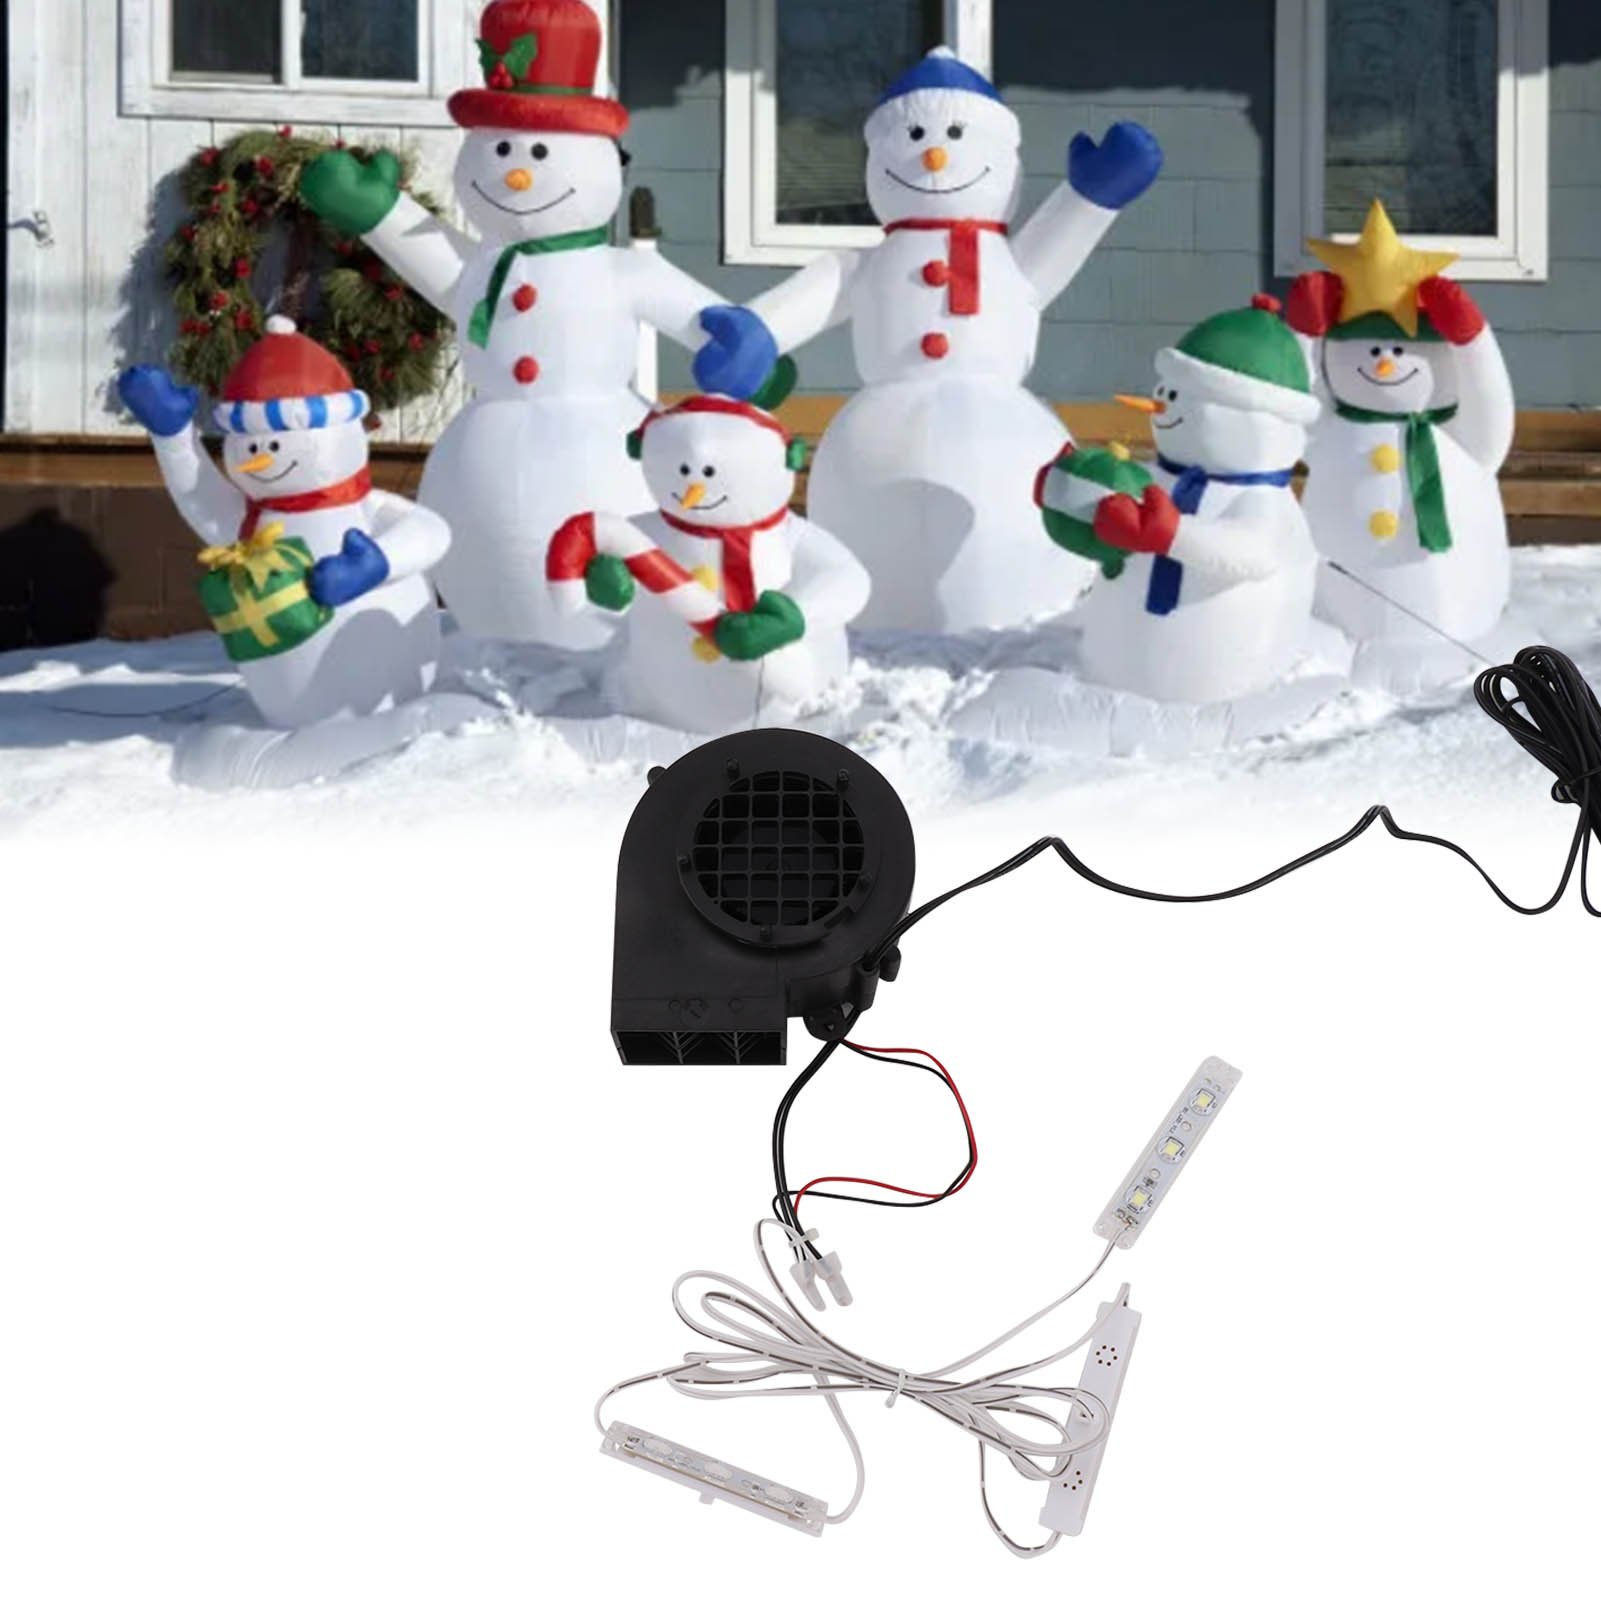 電動エアポンプ、小型ブロワー、3つのLEDライトストリング付き ポータブルミニ送風機 12V インフレータブル送風機 インフレータブル エアブロワー クリスマス インフレータブル ブロワー ポンプ 電球セット付き 屋外ホリデーデコレーション用